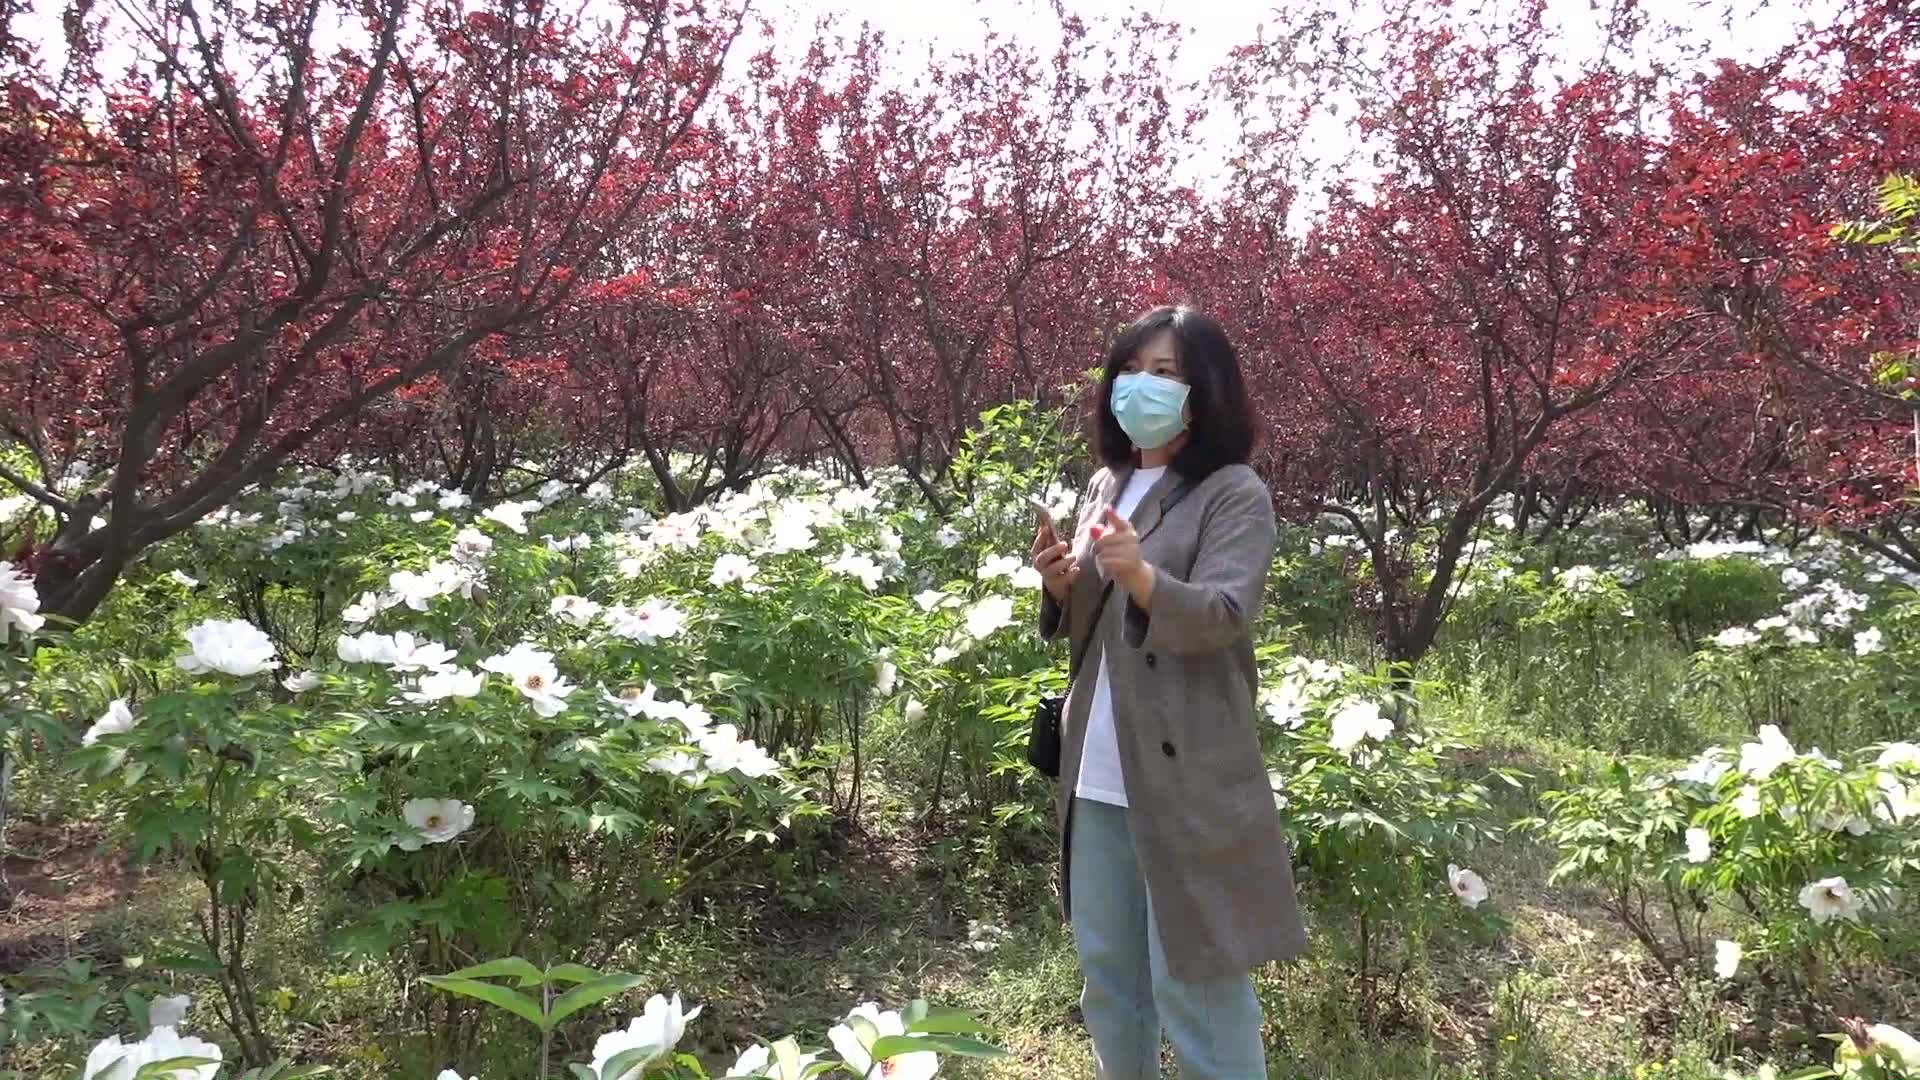 偶然发现路边的一大片芍药花，北京的春天真是太美了，